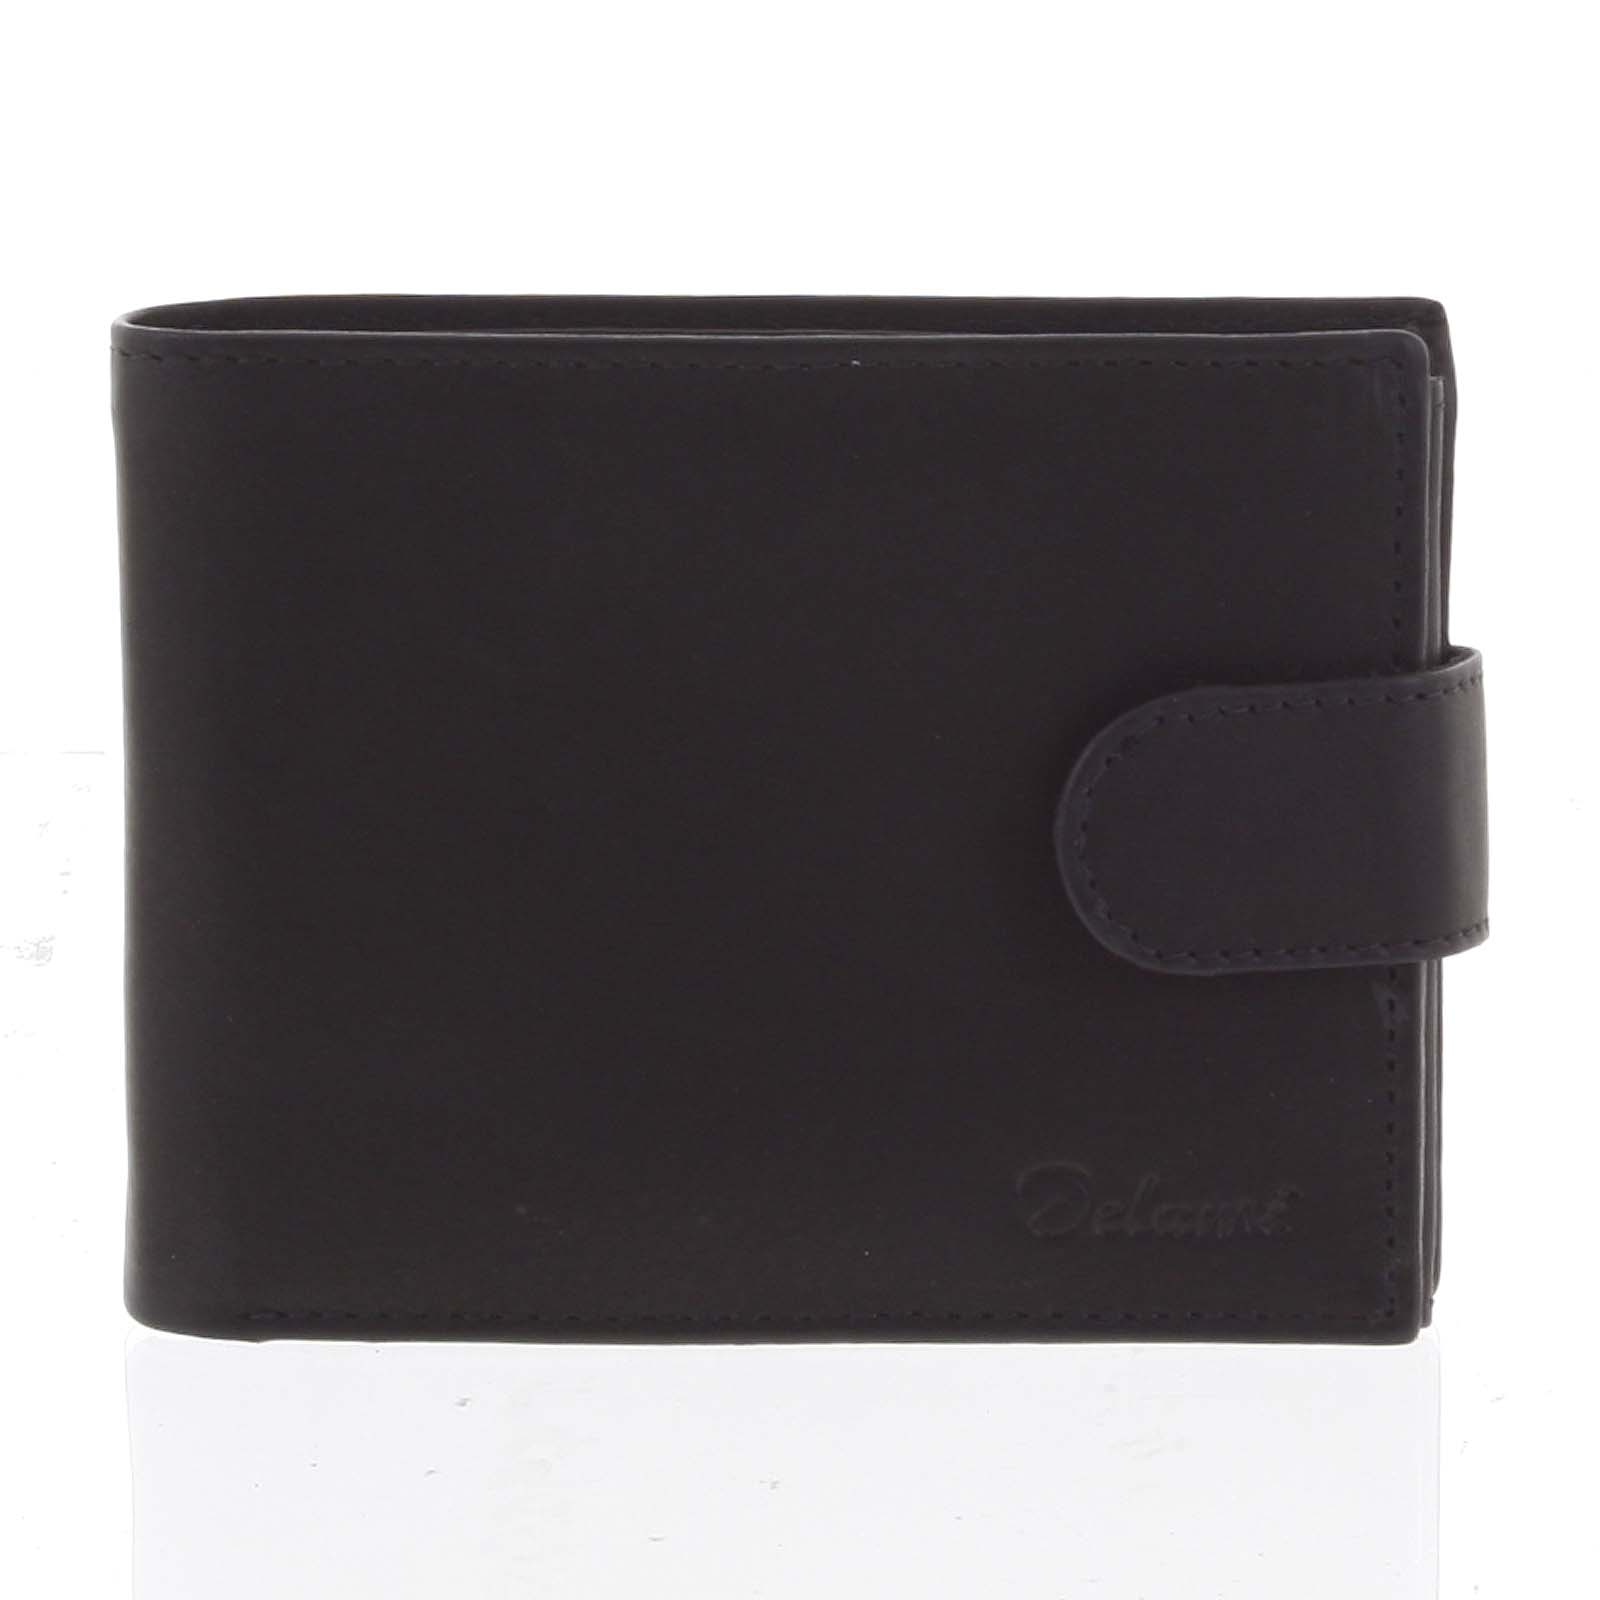 Jednoduchá pánská kožená černá peněženka - Delami 1313CND